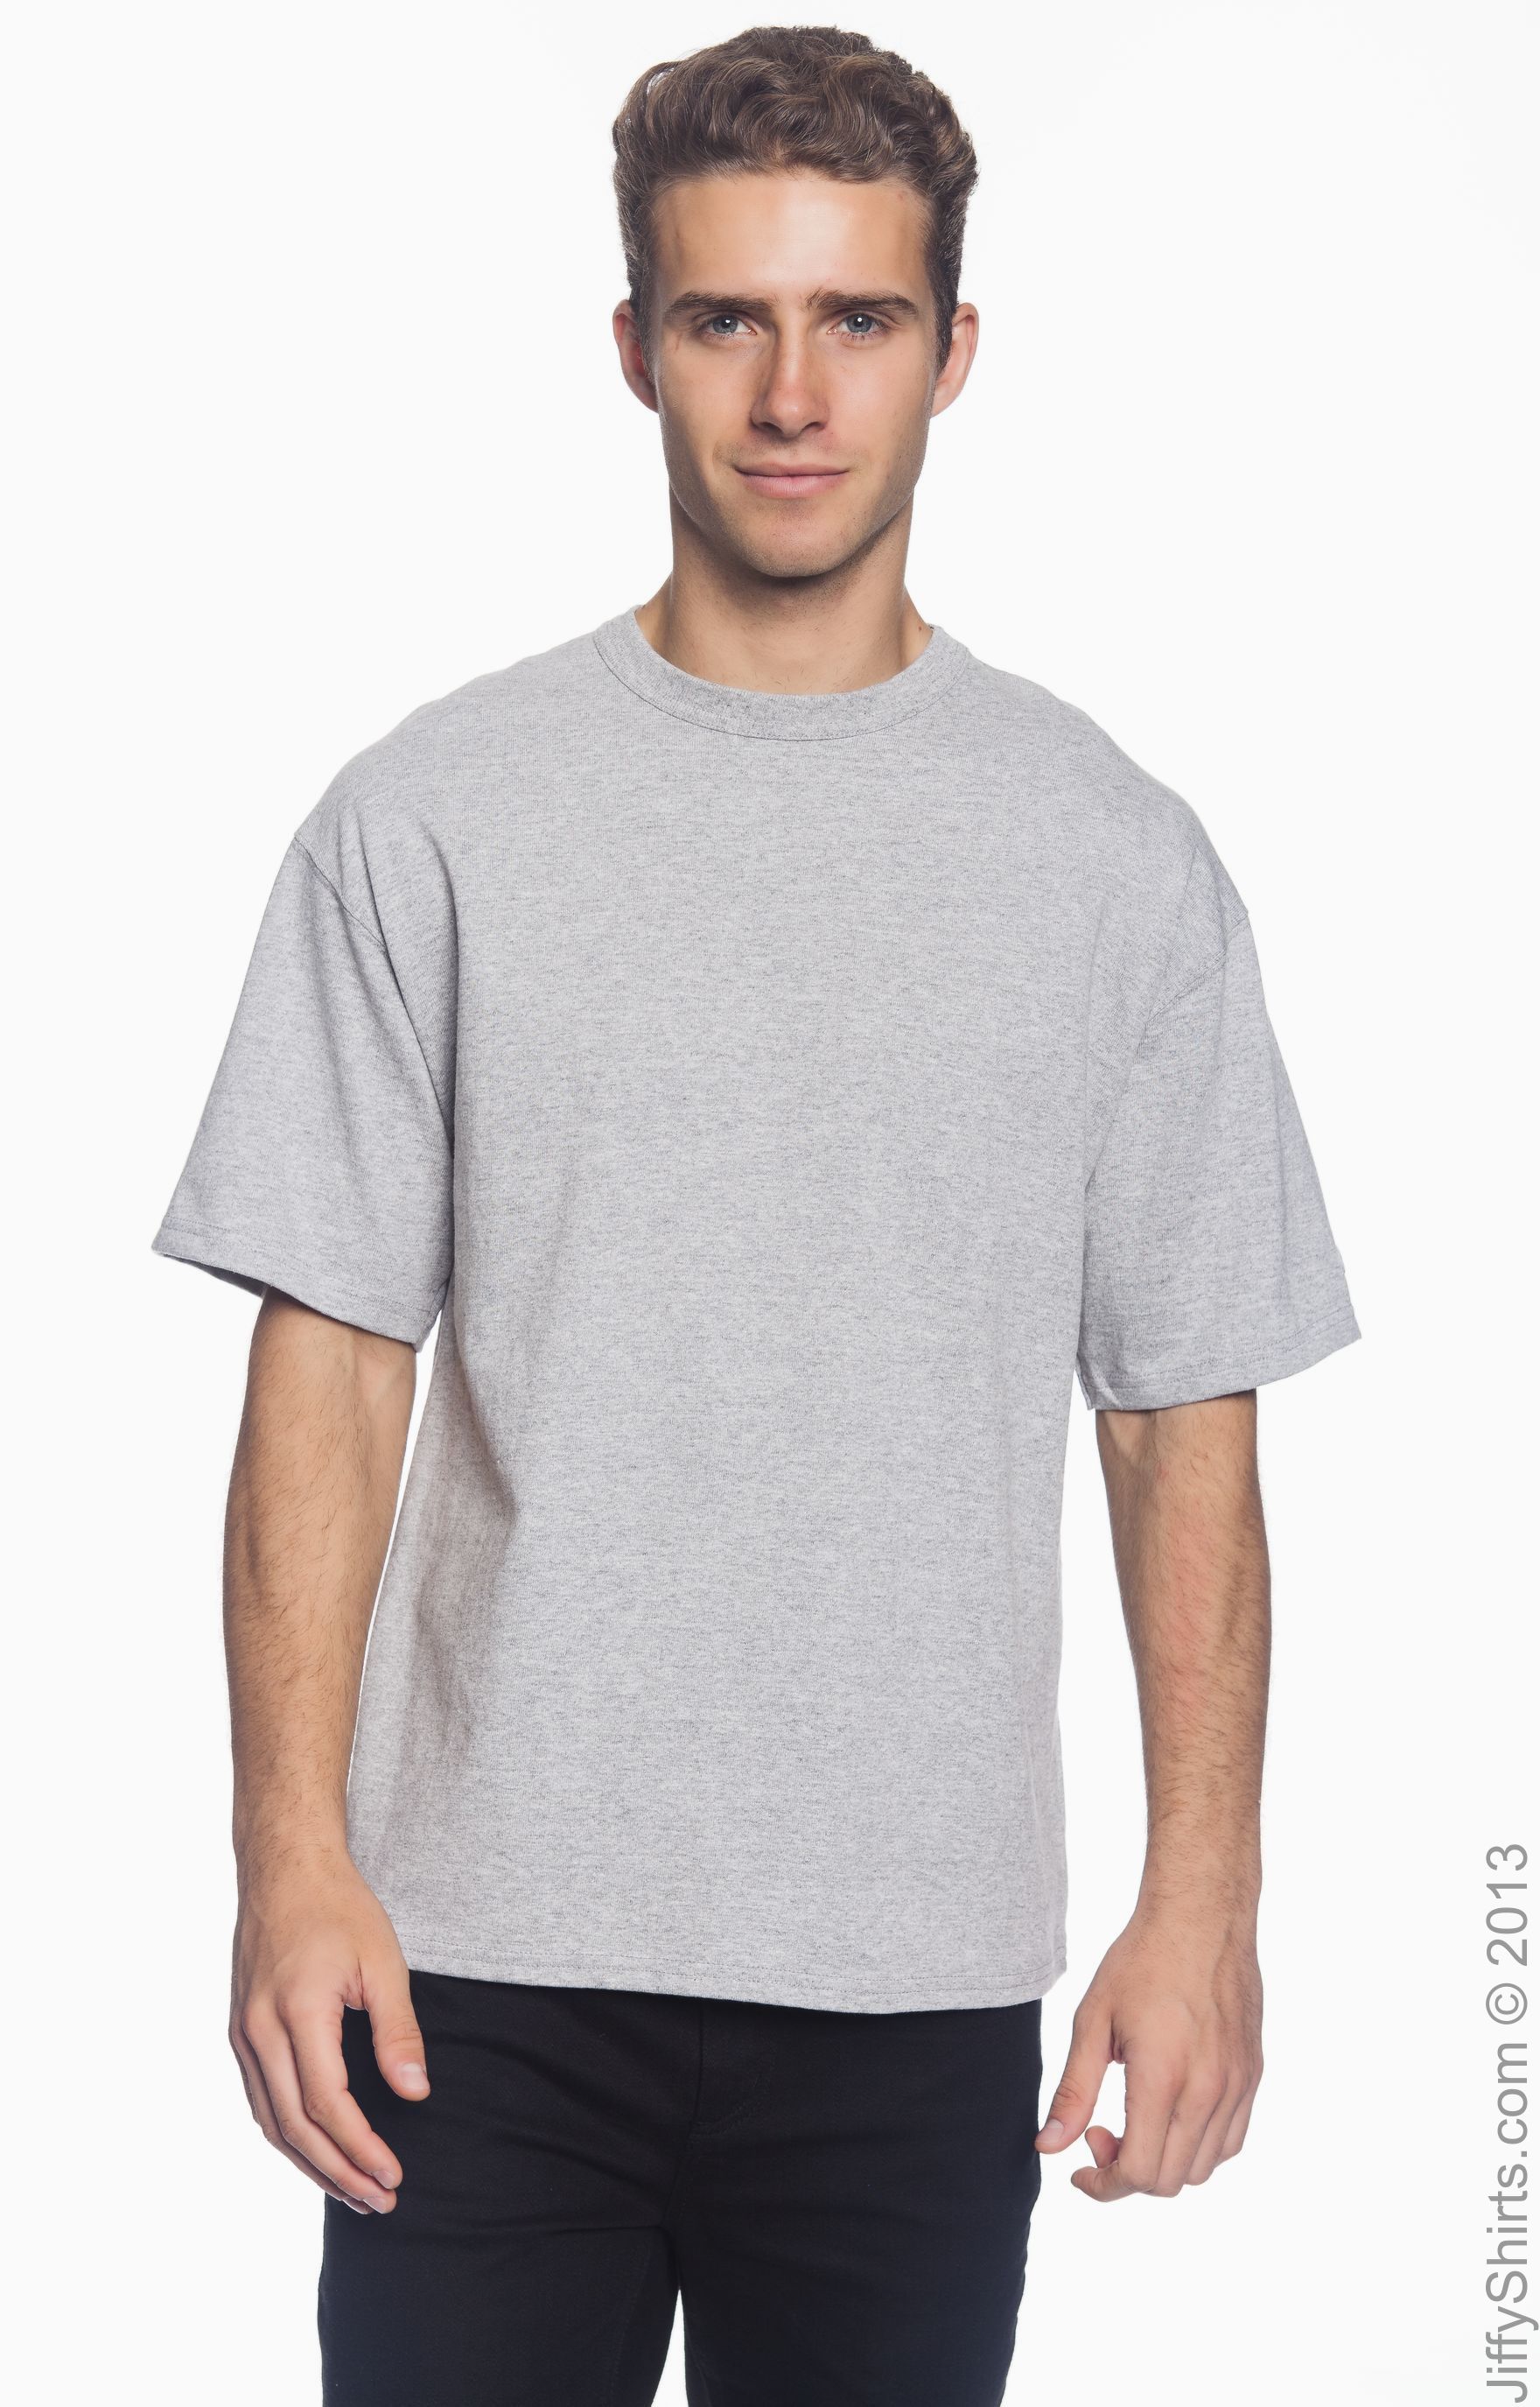 wholesale blank champion t shirts